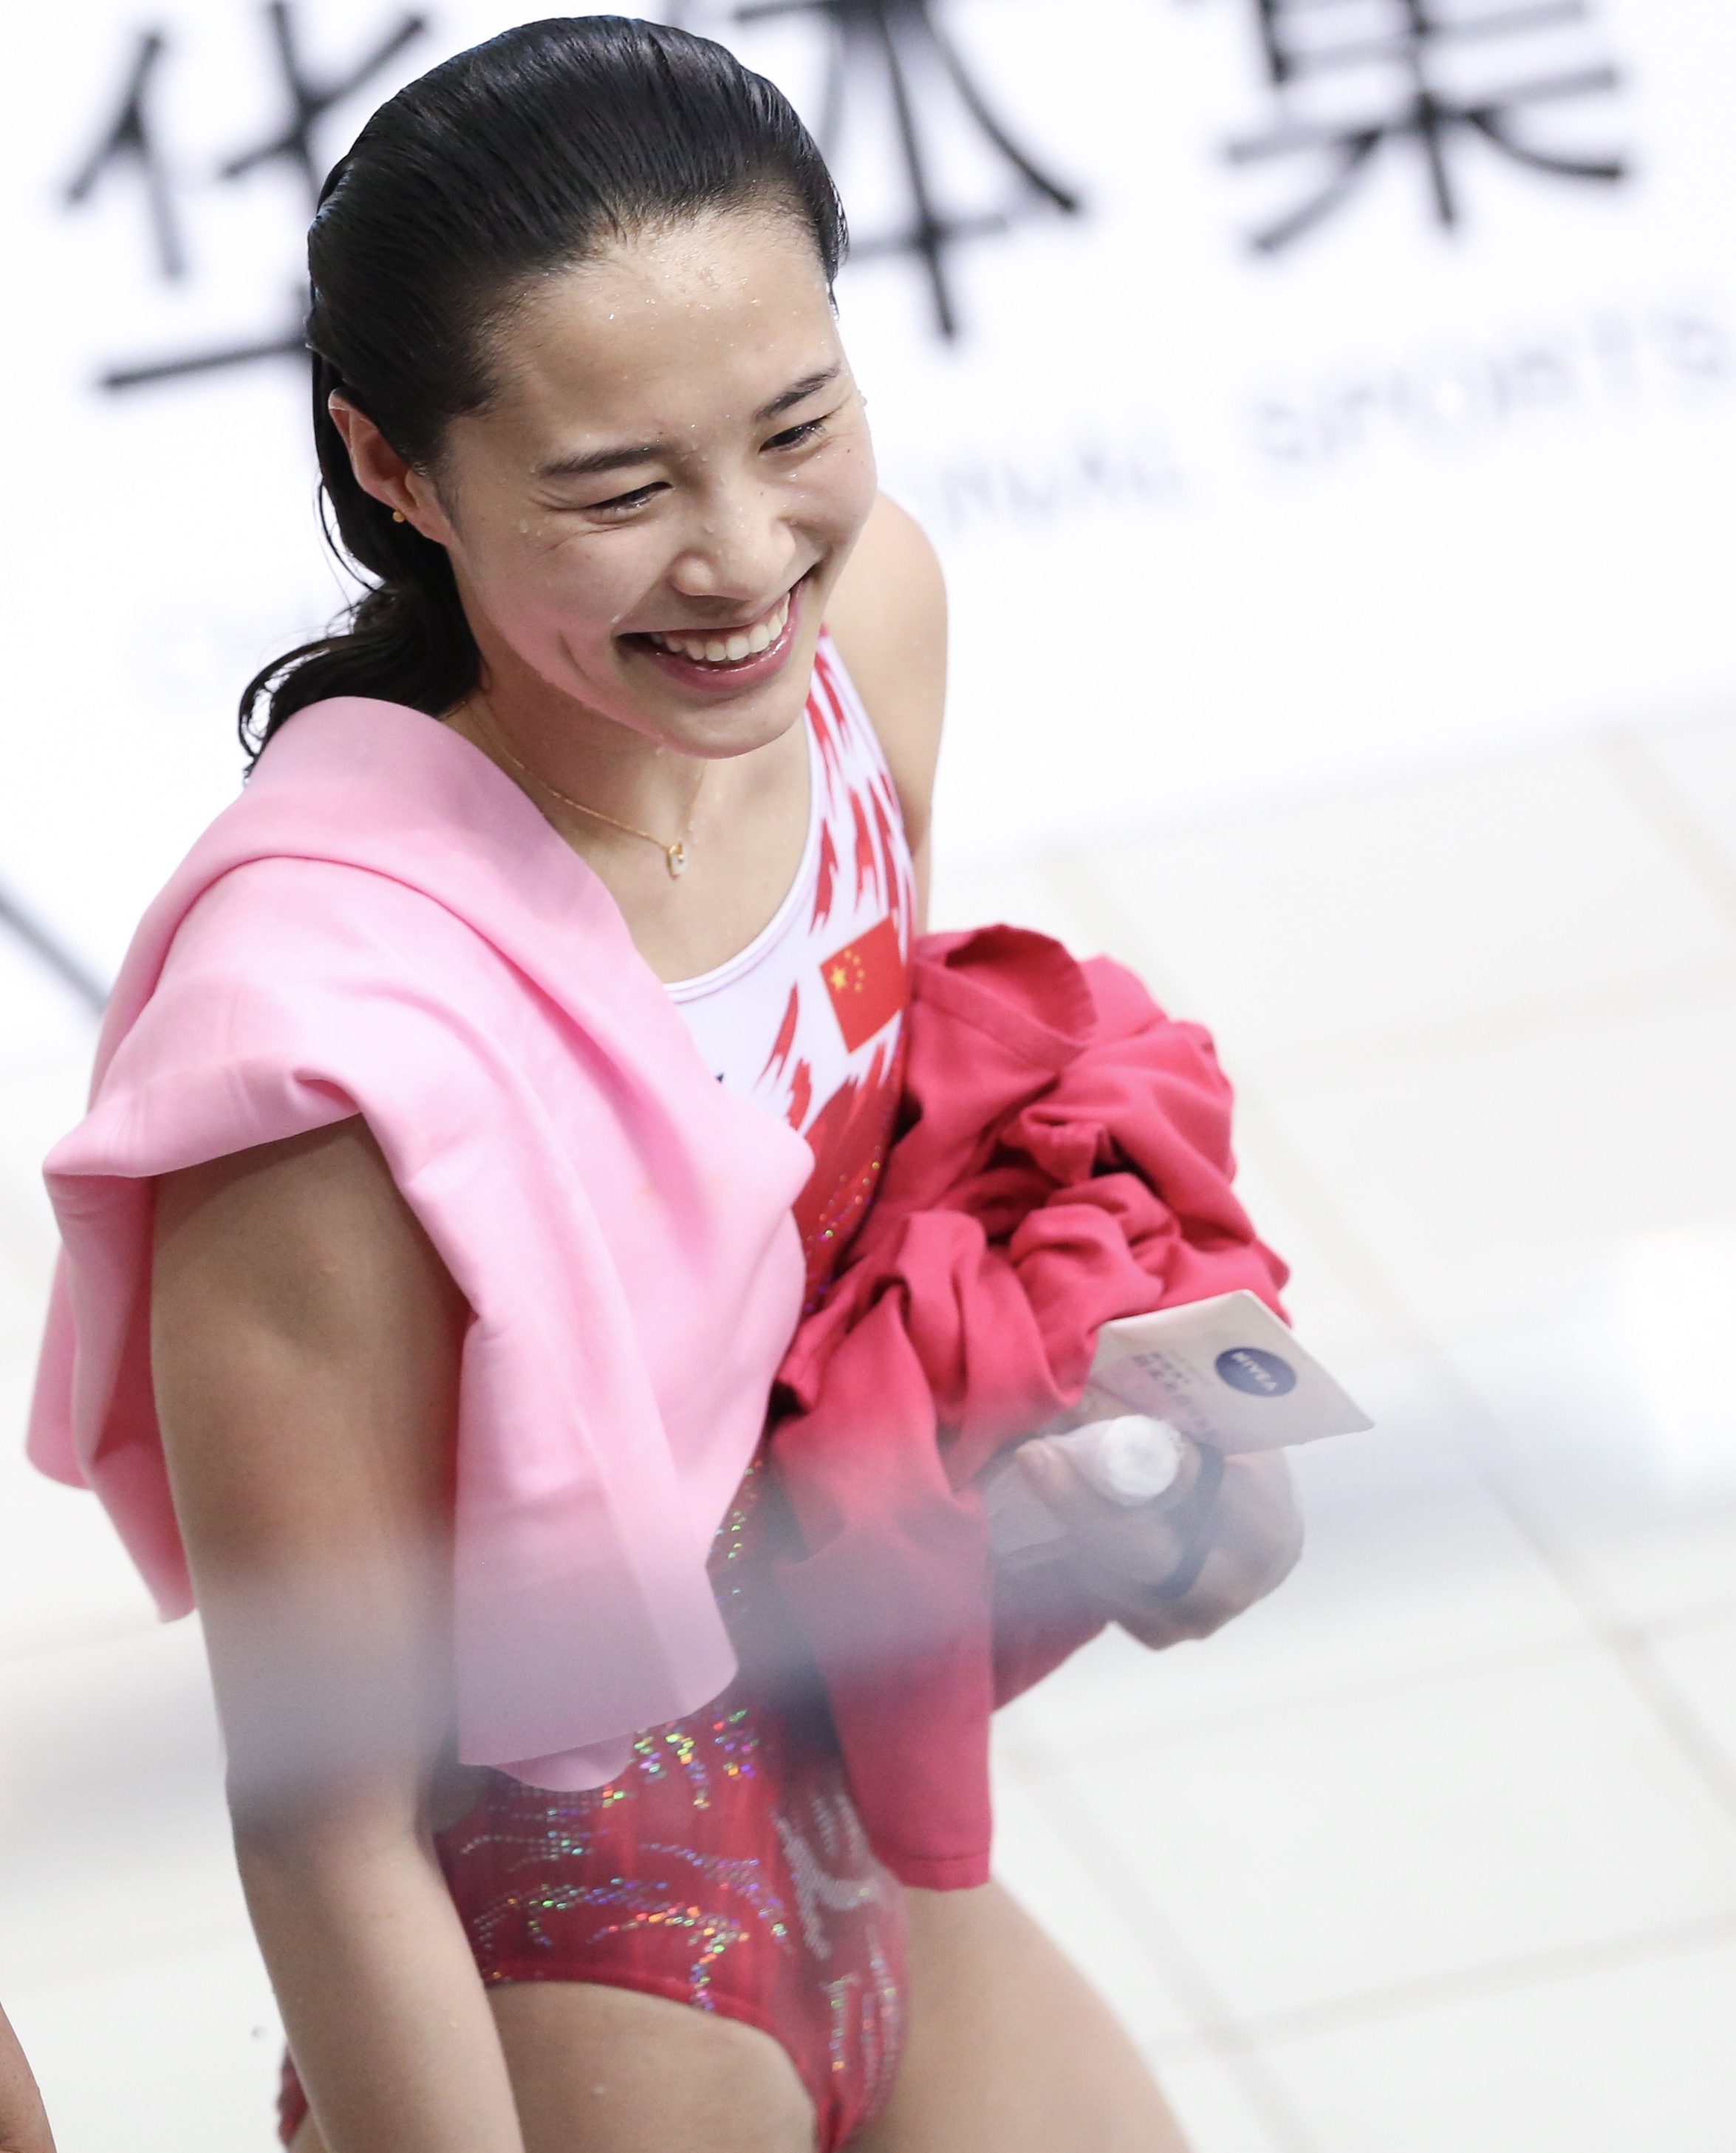 跳水——国际泳联世界系列赛:王涵,施廷懋分获女子三米板冠亚军